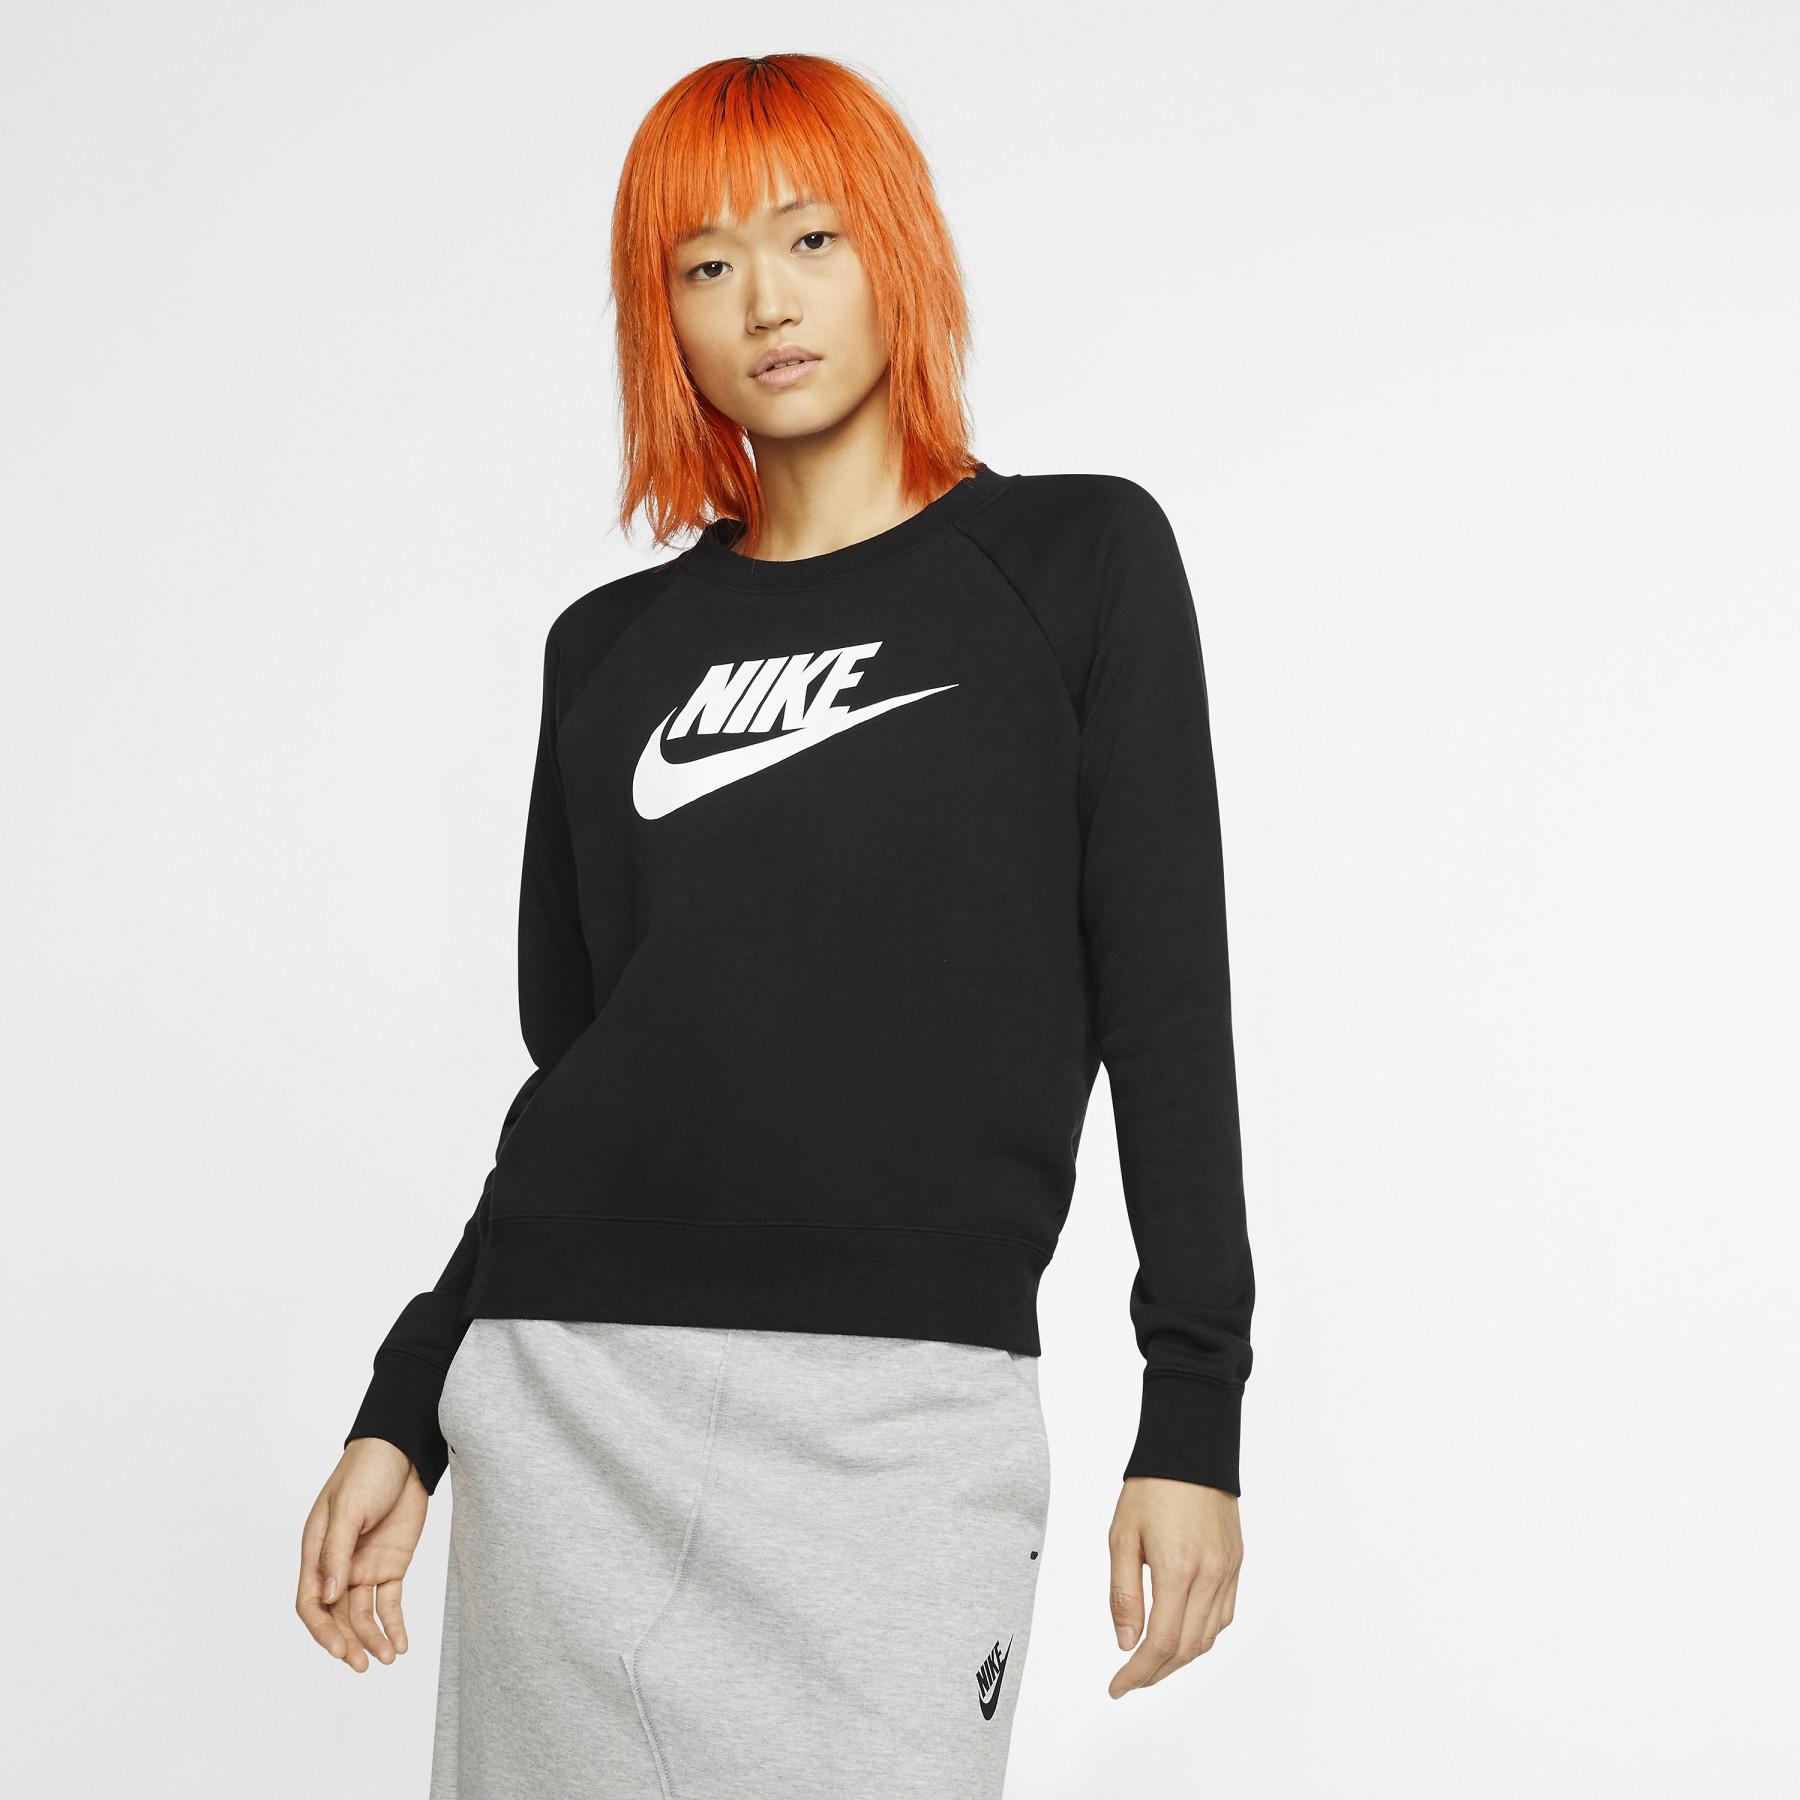 Damen-Sweatshirt Nike Sportswear Essential